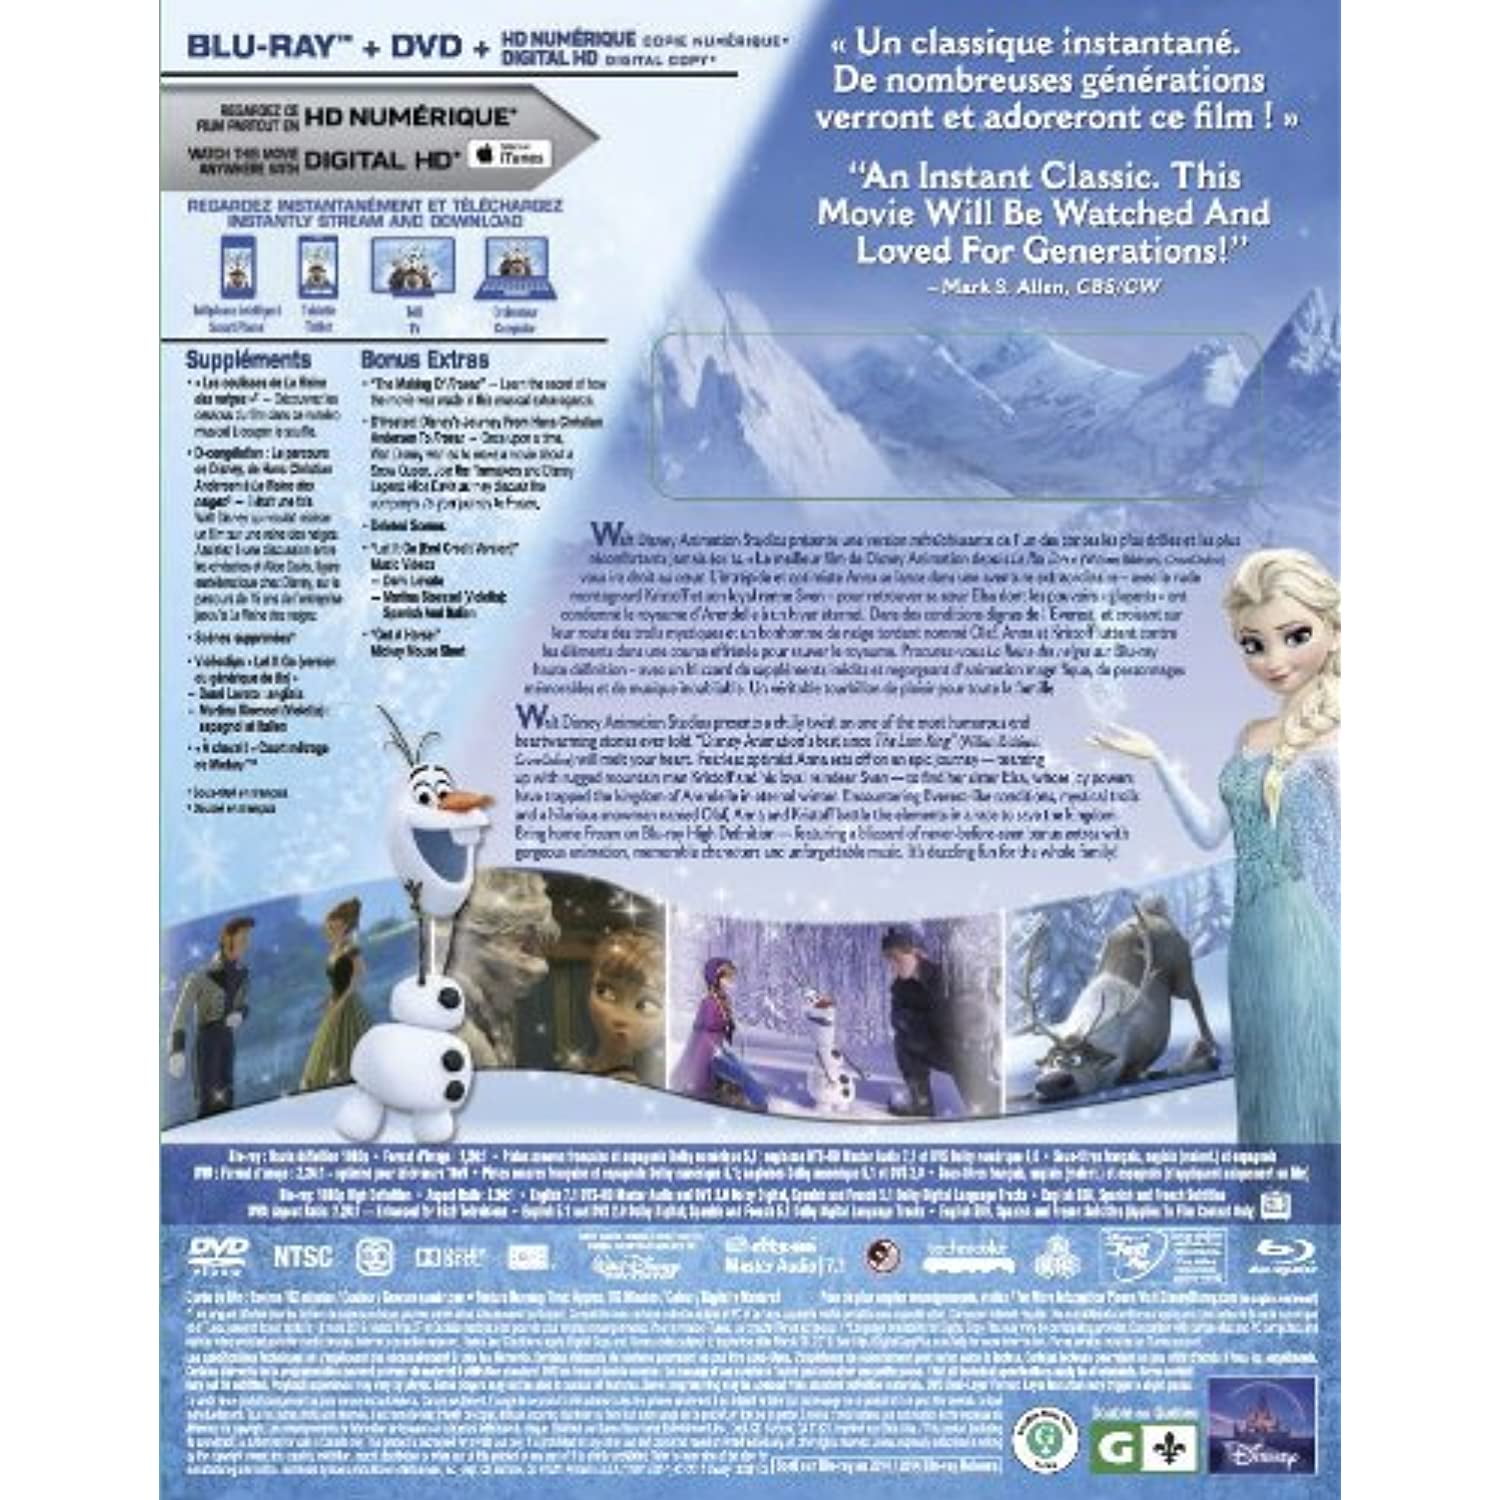 La reine des neiges / Frozen [Blu-ray + DVD + copie numrique] (Bilingual) 